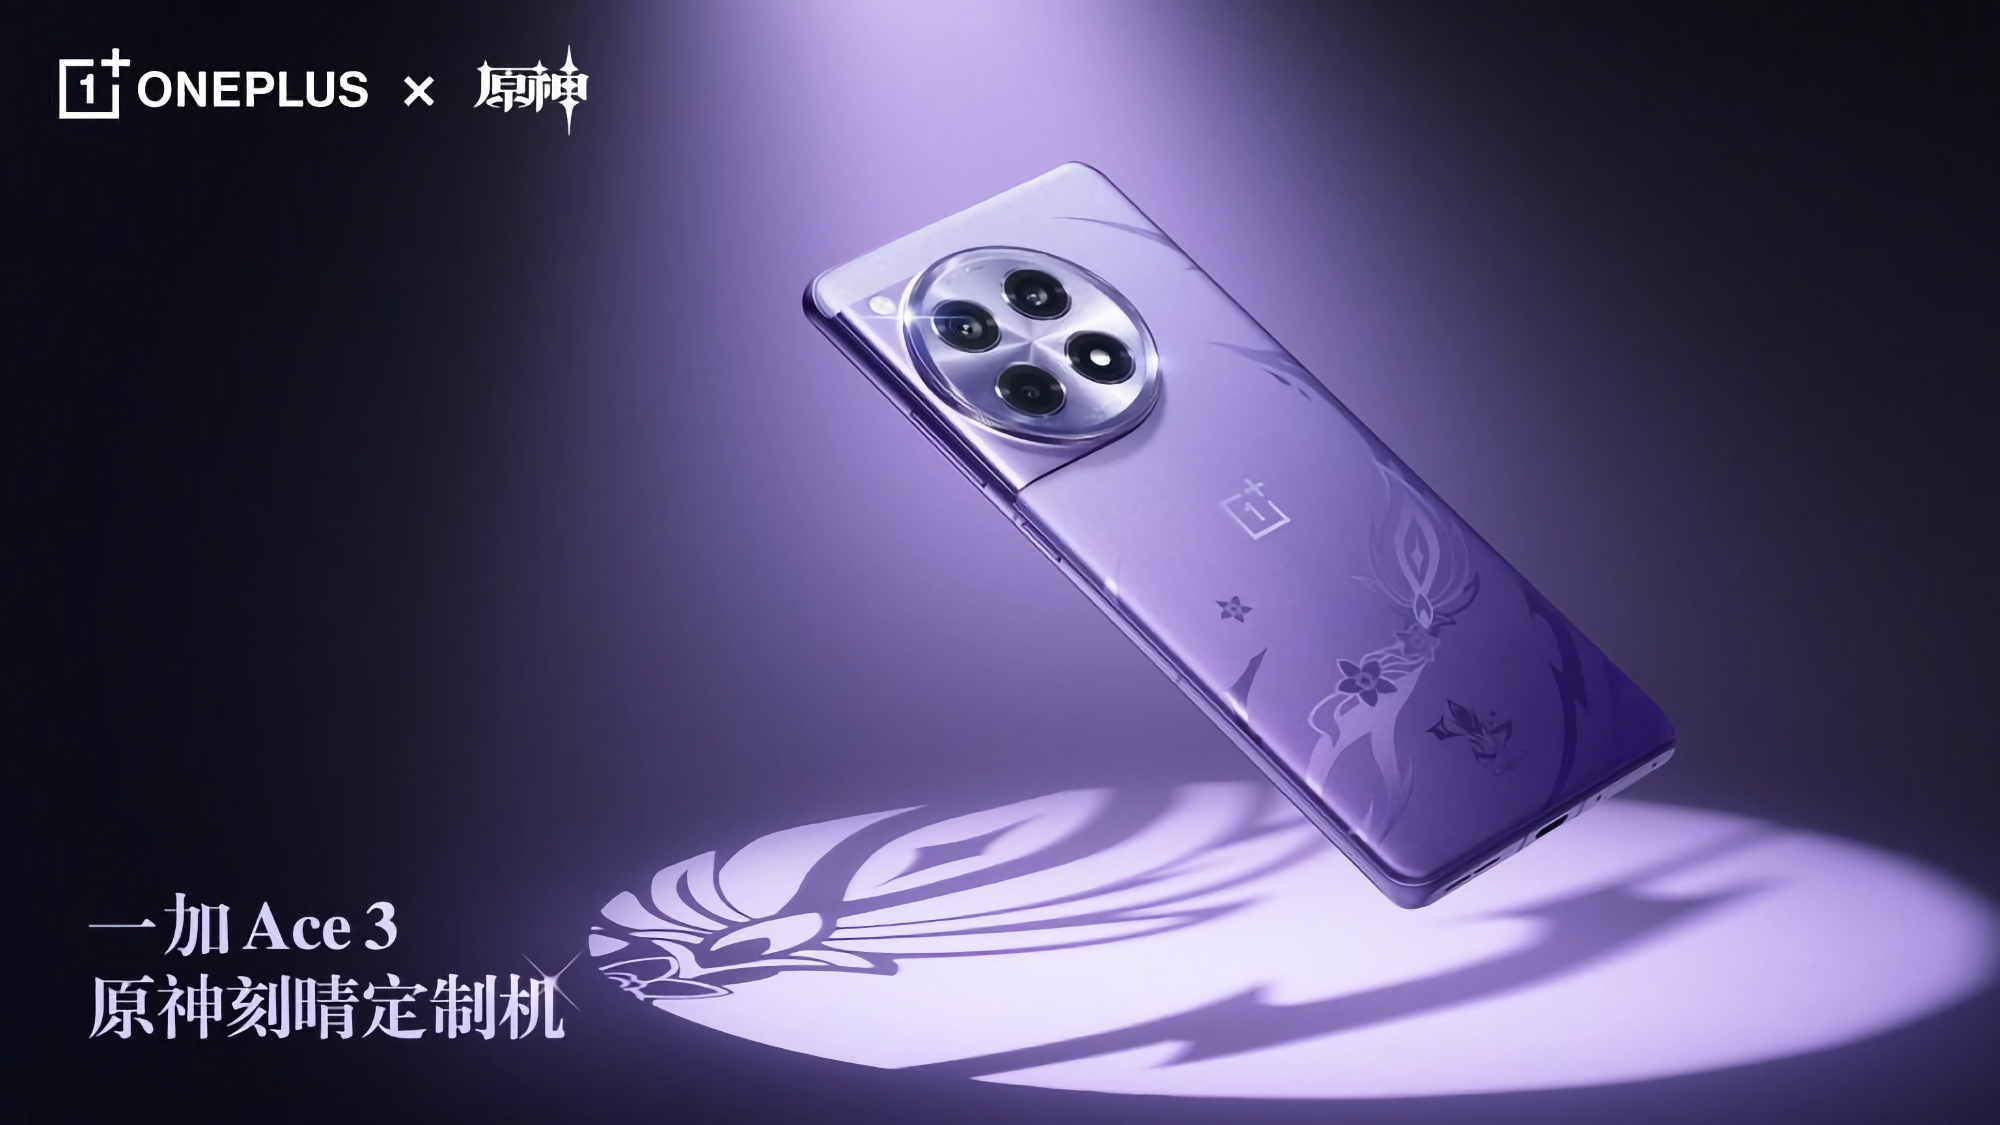 Väntar inte på tillkännagivandet: OnePlus har avslöjat en specialversion av OnePlus Ace 3 för Genshin Impact-fans